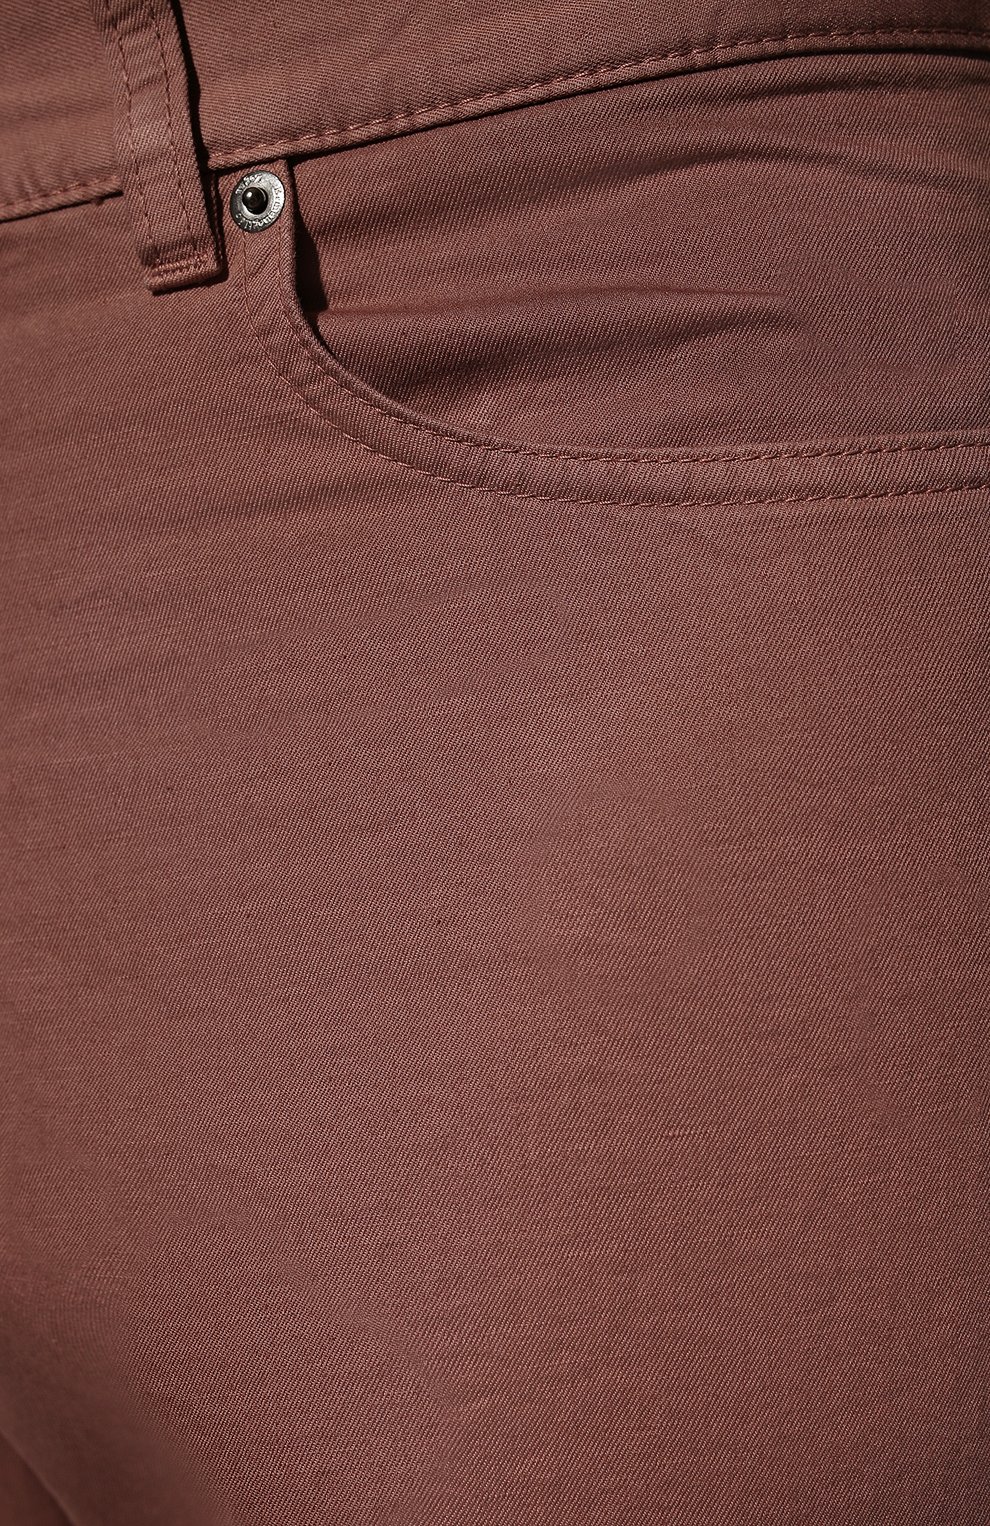 Мужские брюки из хлопка и льна ERMENEGILDO ZEGNA розового цвета, арт. UZI37/GAN | Фото 5 (Длина (брюки, джинсы): Стандартные; Случай: Повседневный; Материал внешний: Хлопок; Стили: Кэжуэл)